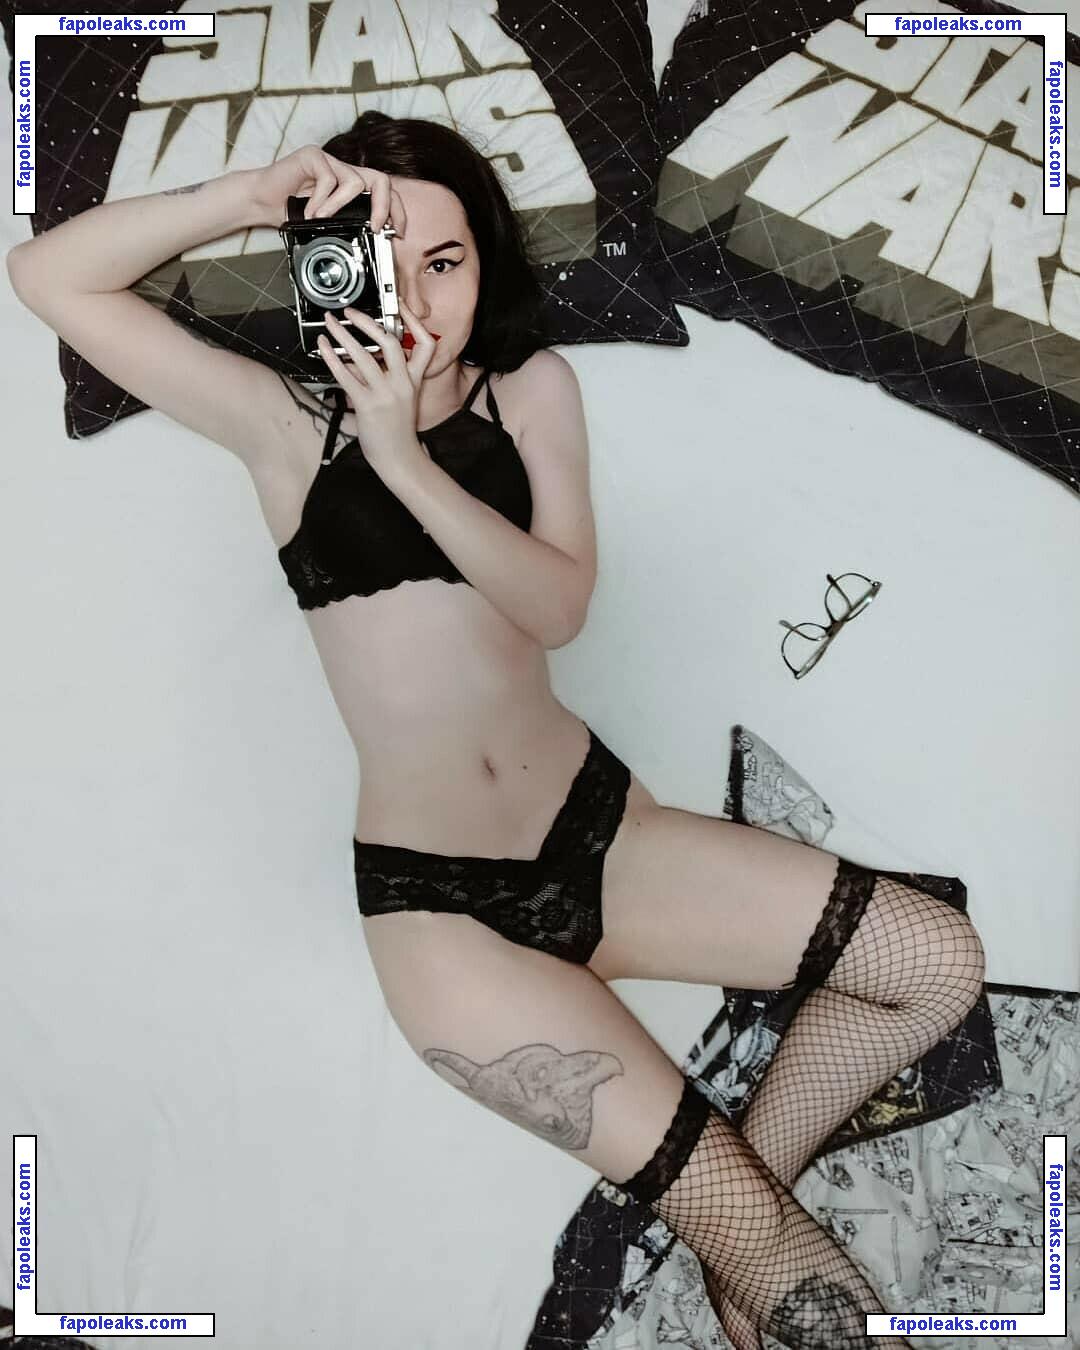 Marina Von Blume / mvm_makeupartist nude photo #0018 from OnlyFans